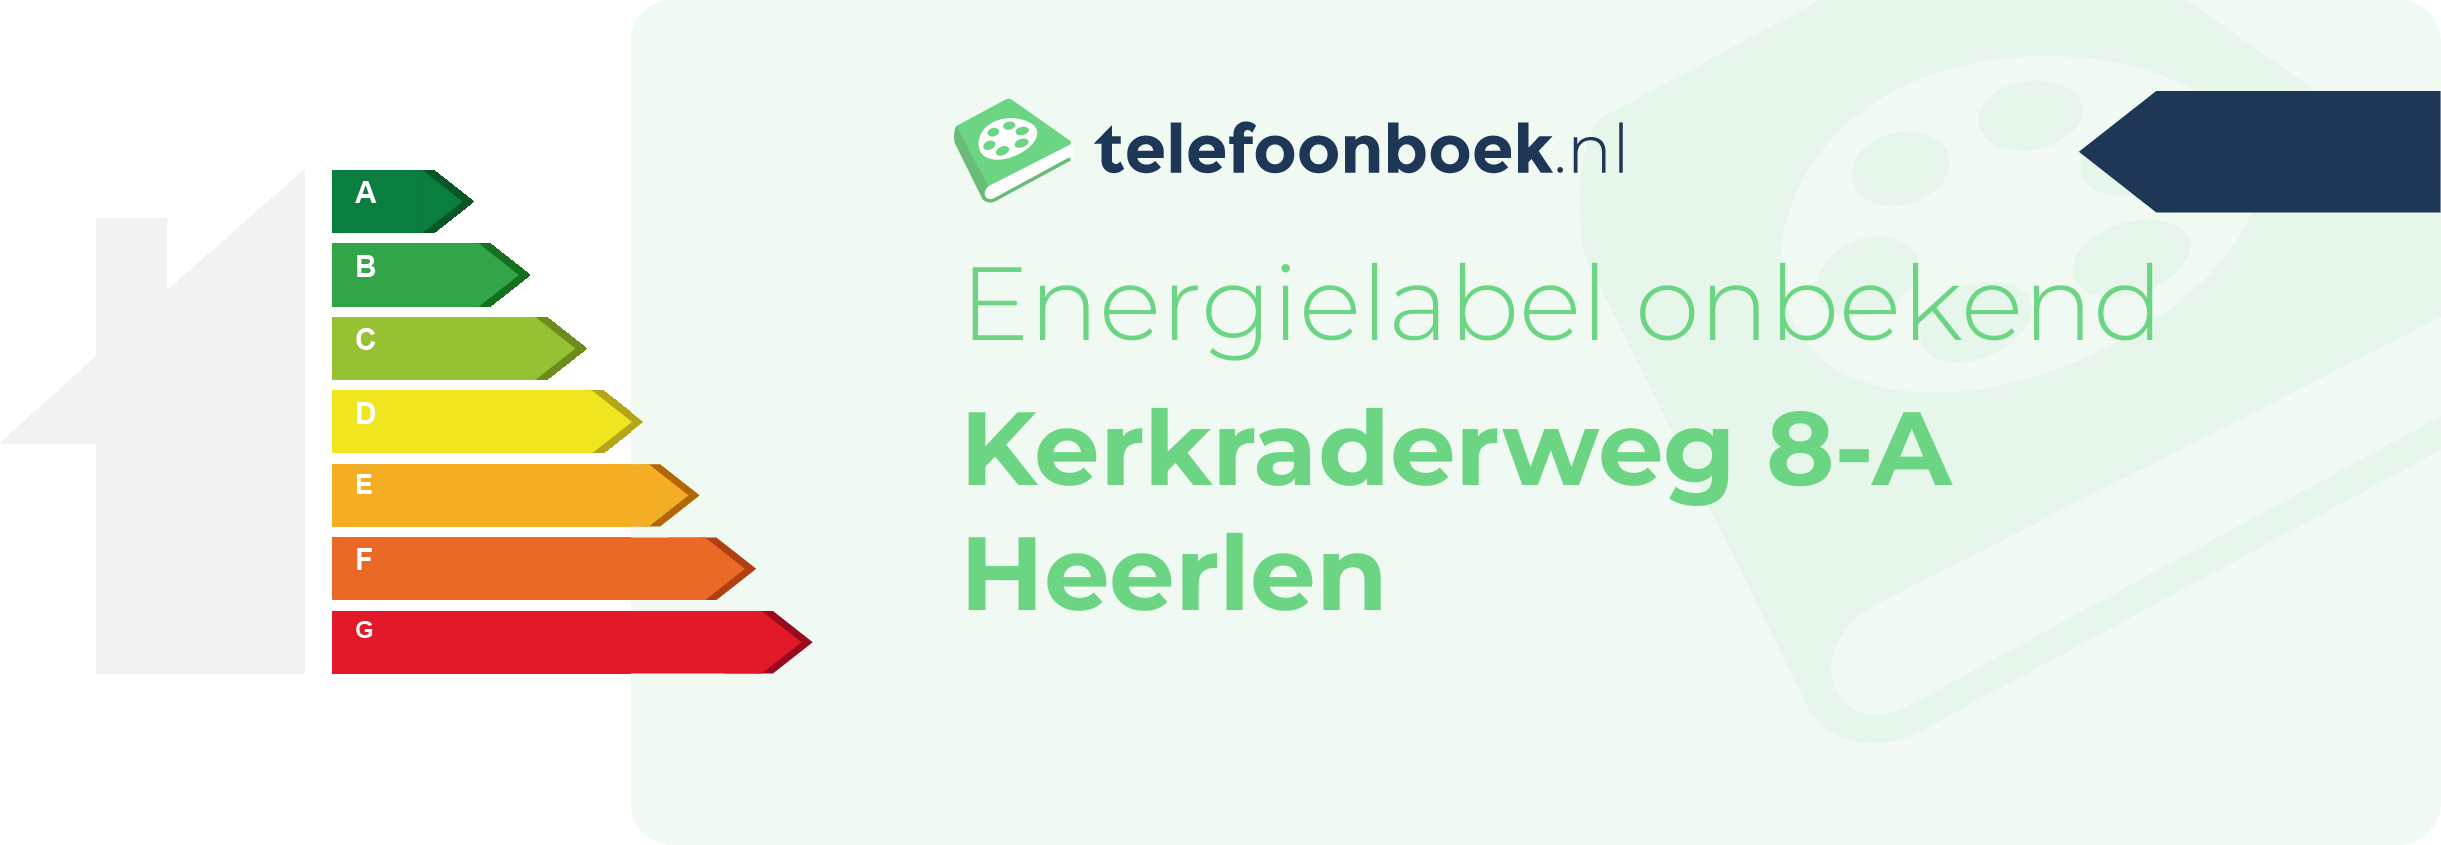 Energielabel Kerkraderweg 8-A Heerlen